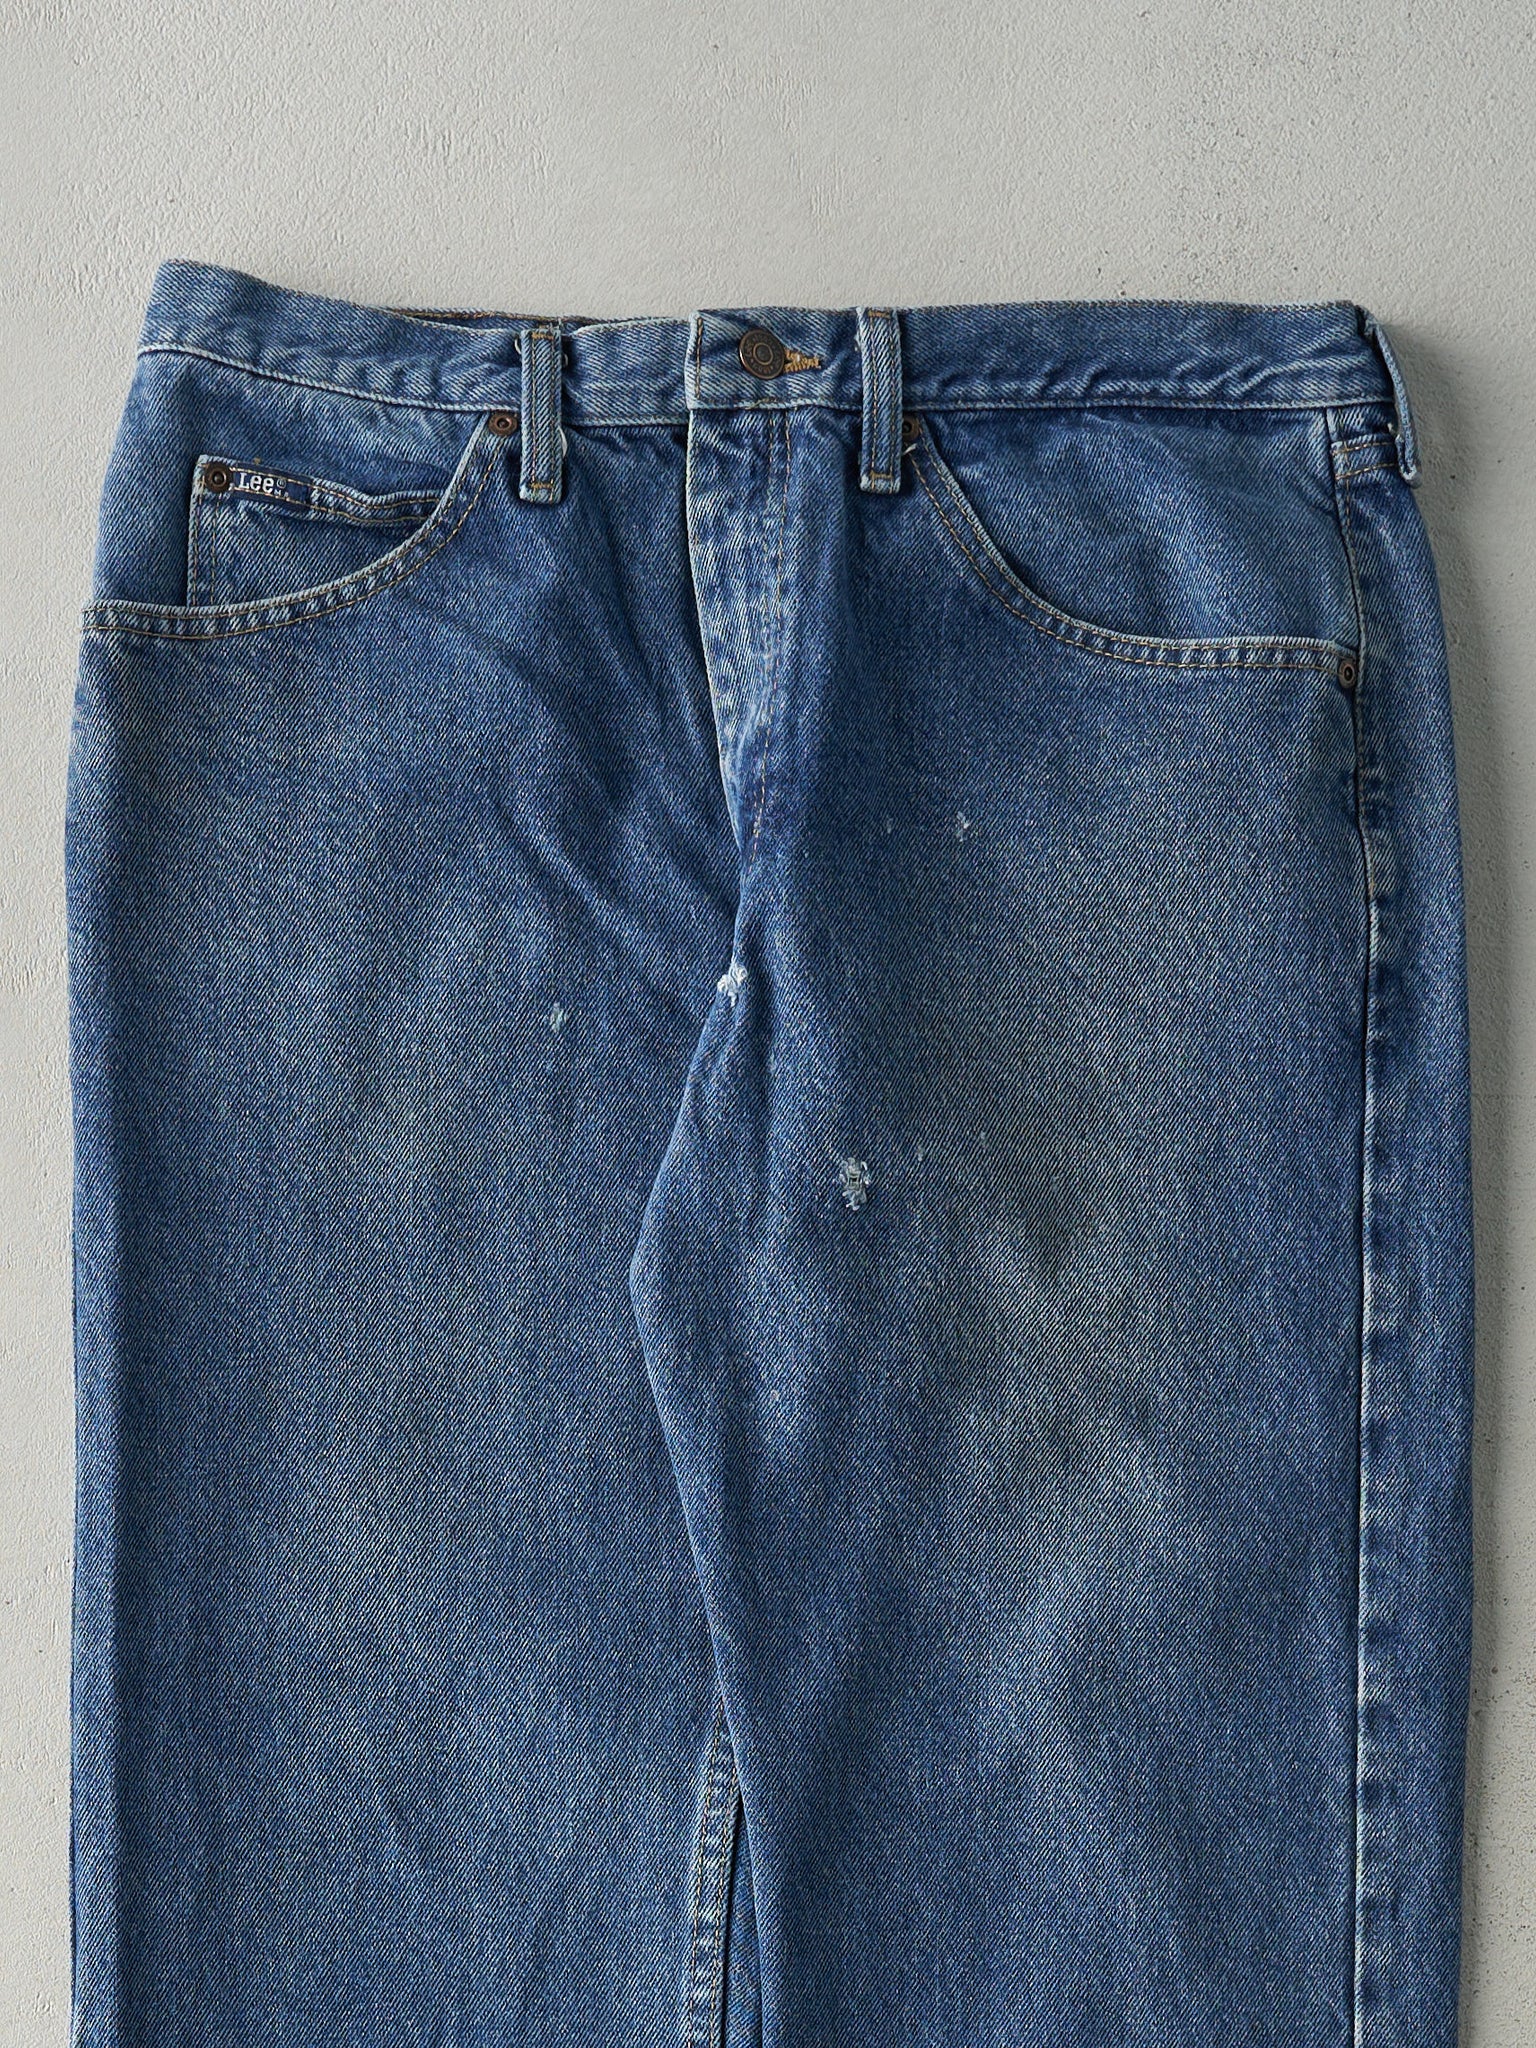 Vintage 90s Mid Wash Lee Regular Fit Jeans (33x29)